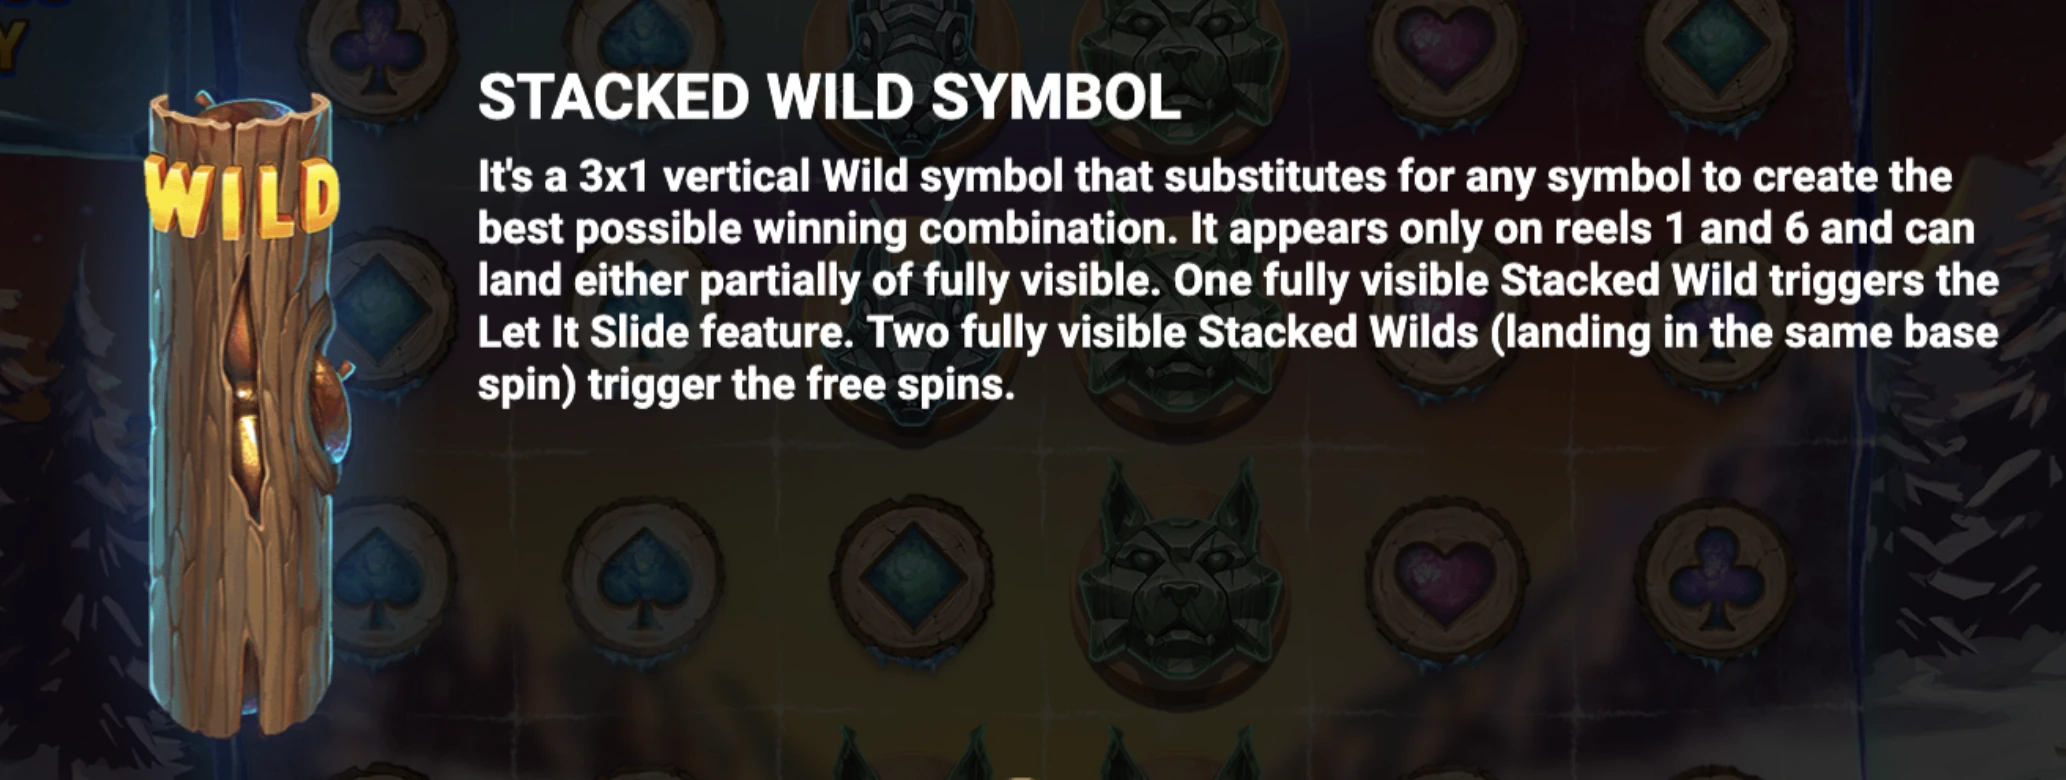 Stacker Wild Symbole disponible sur la machine a sous Let It Slide du provider Jade Rabbit Studio en collaboration avec Yggdrasil Gaming